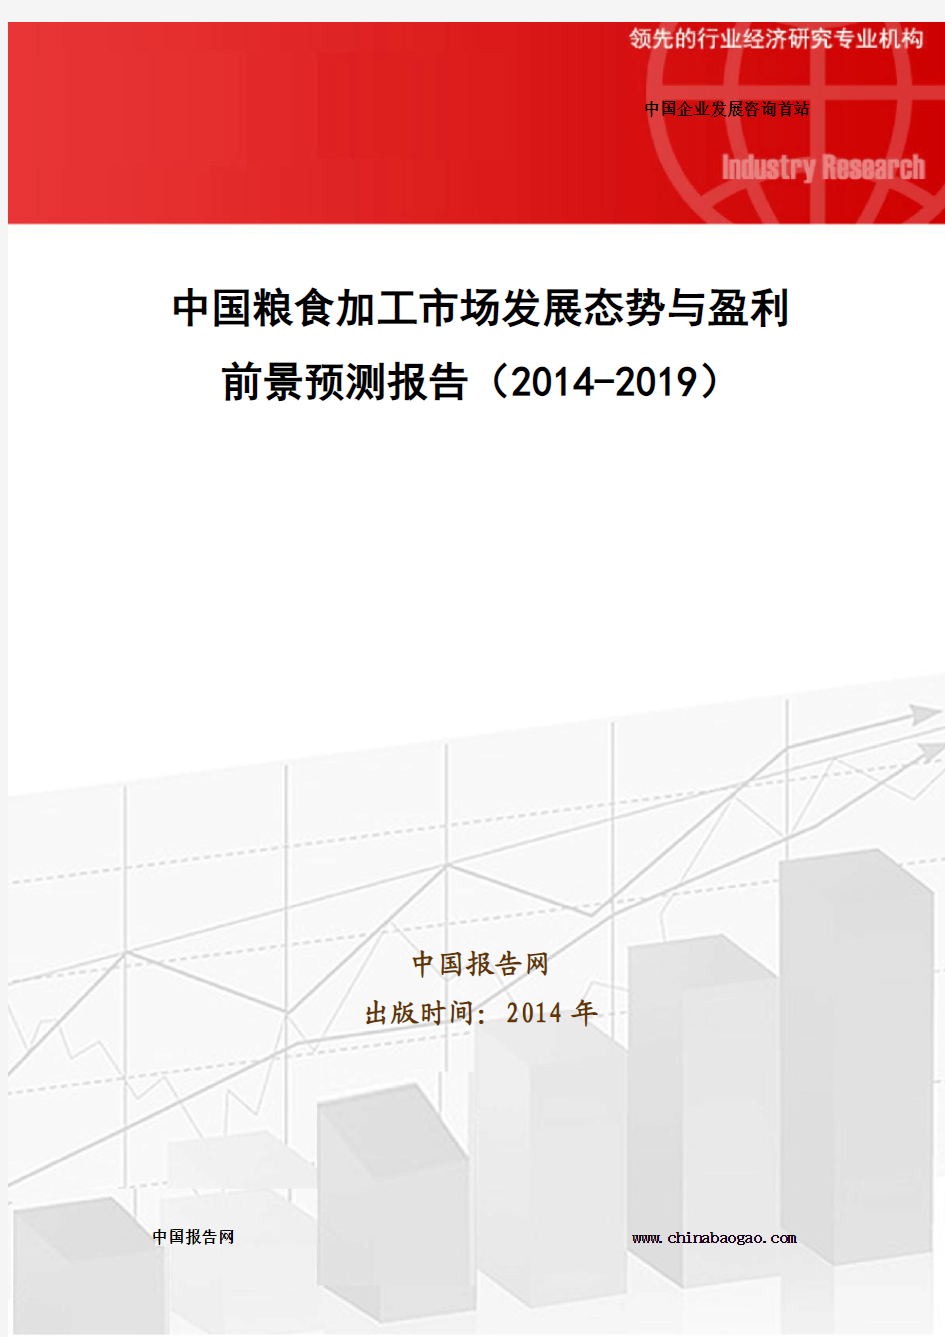 中国粮食加工市场发展态势与盈利前景预测报告(2014-2019)